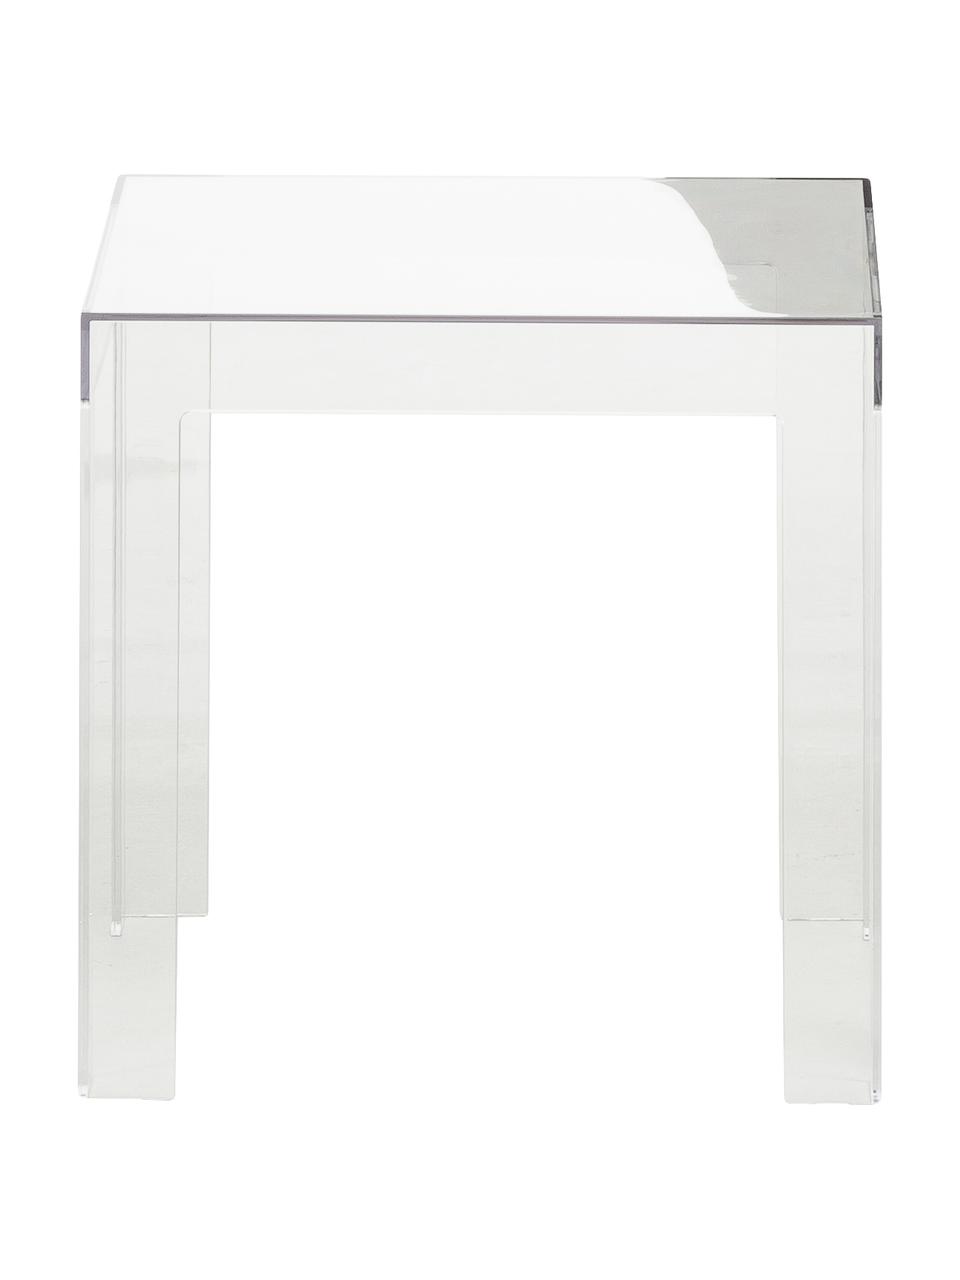 Table d'appoint transparenteJolly, Polycarbonate, Transparent, larg. 40 x haut. 40 cm